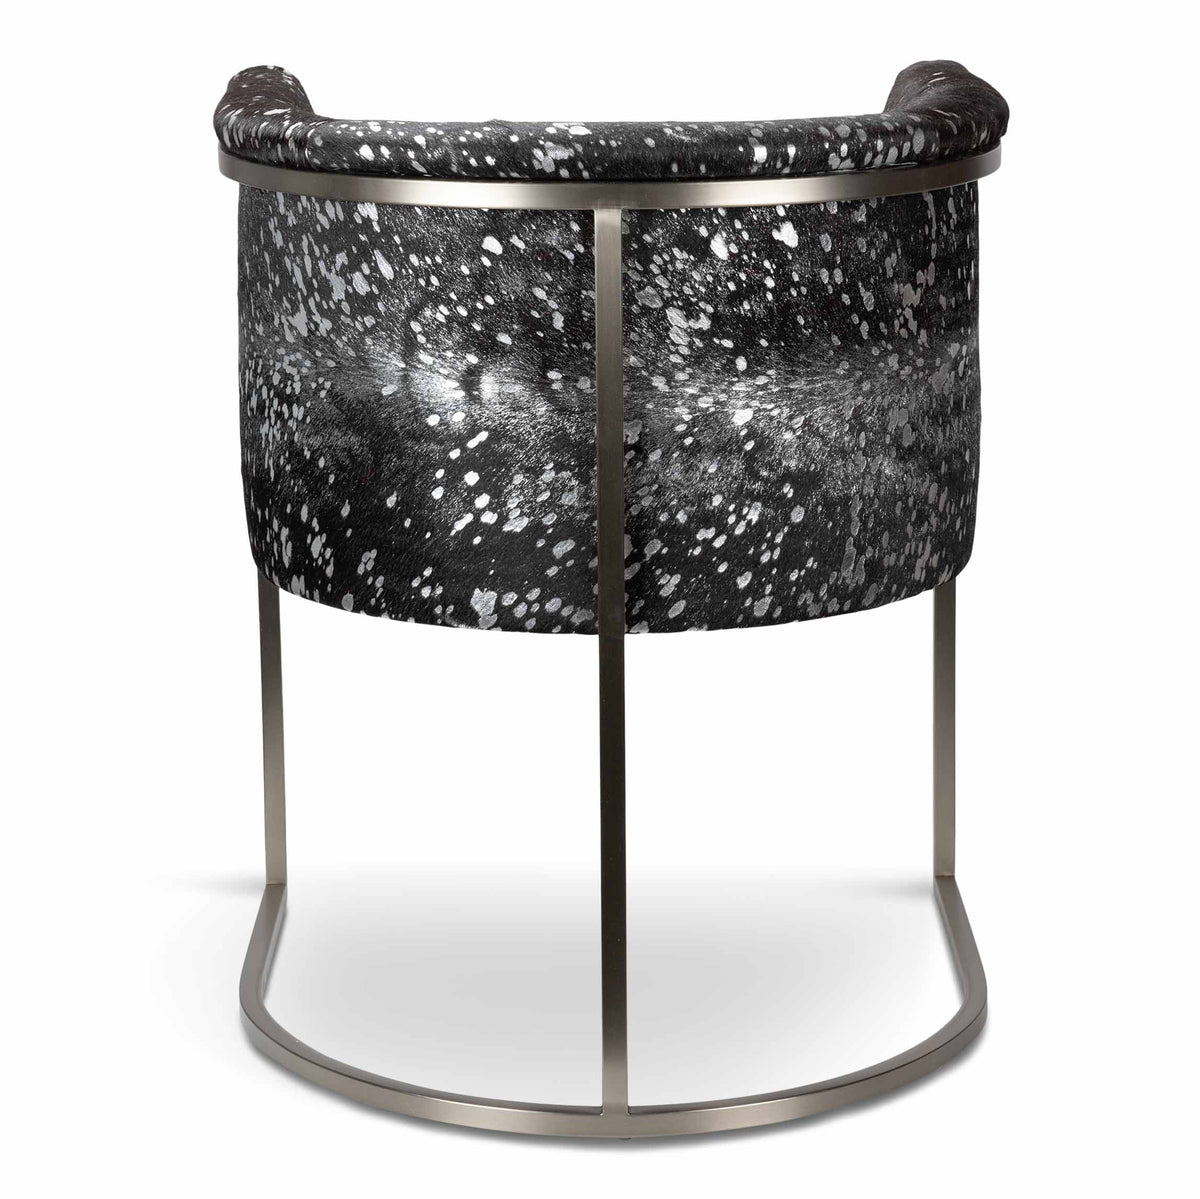 Corfu Dining Chair in Black Silver Cowhide